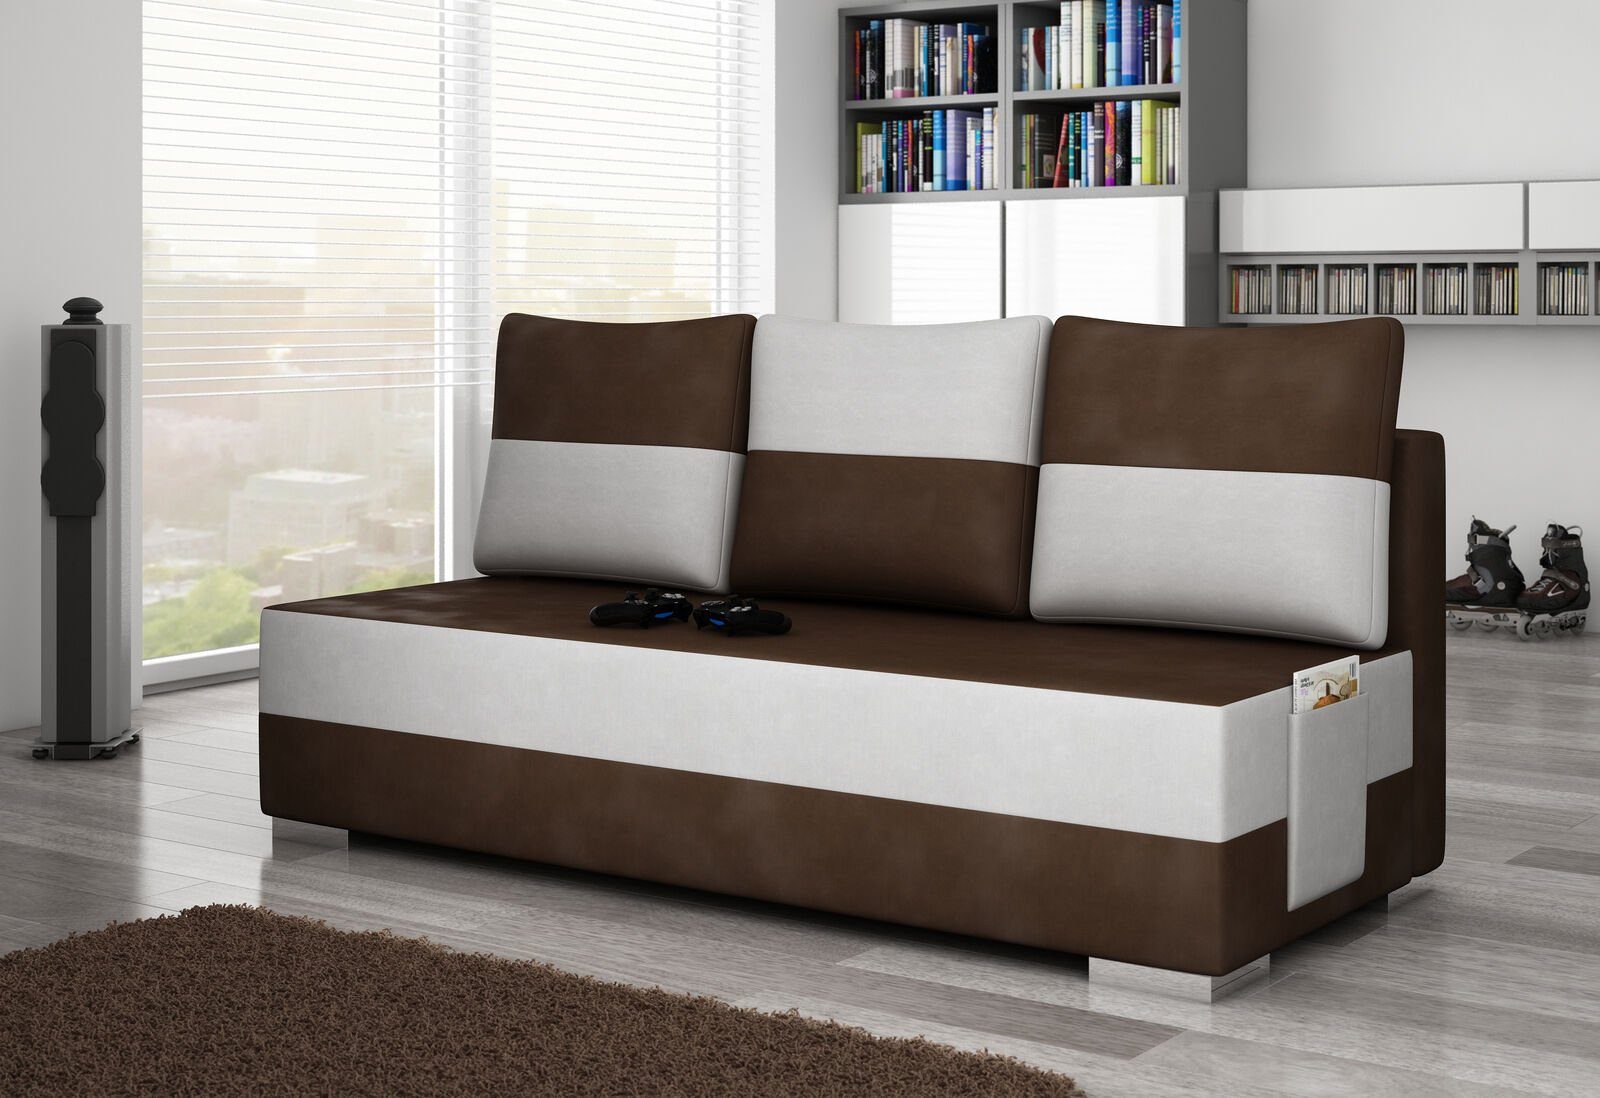 JVmoebel Sofa Braun-weißer Dreisitzer in Textilmöbel Weiß / Dunkelbraun luxus Sofa Neu, Europe 3-er Made Couch